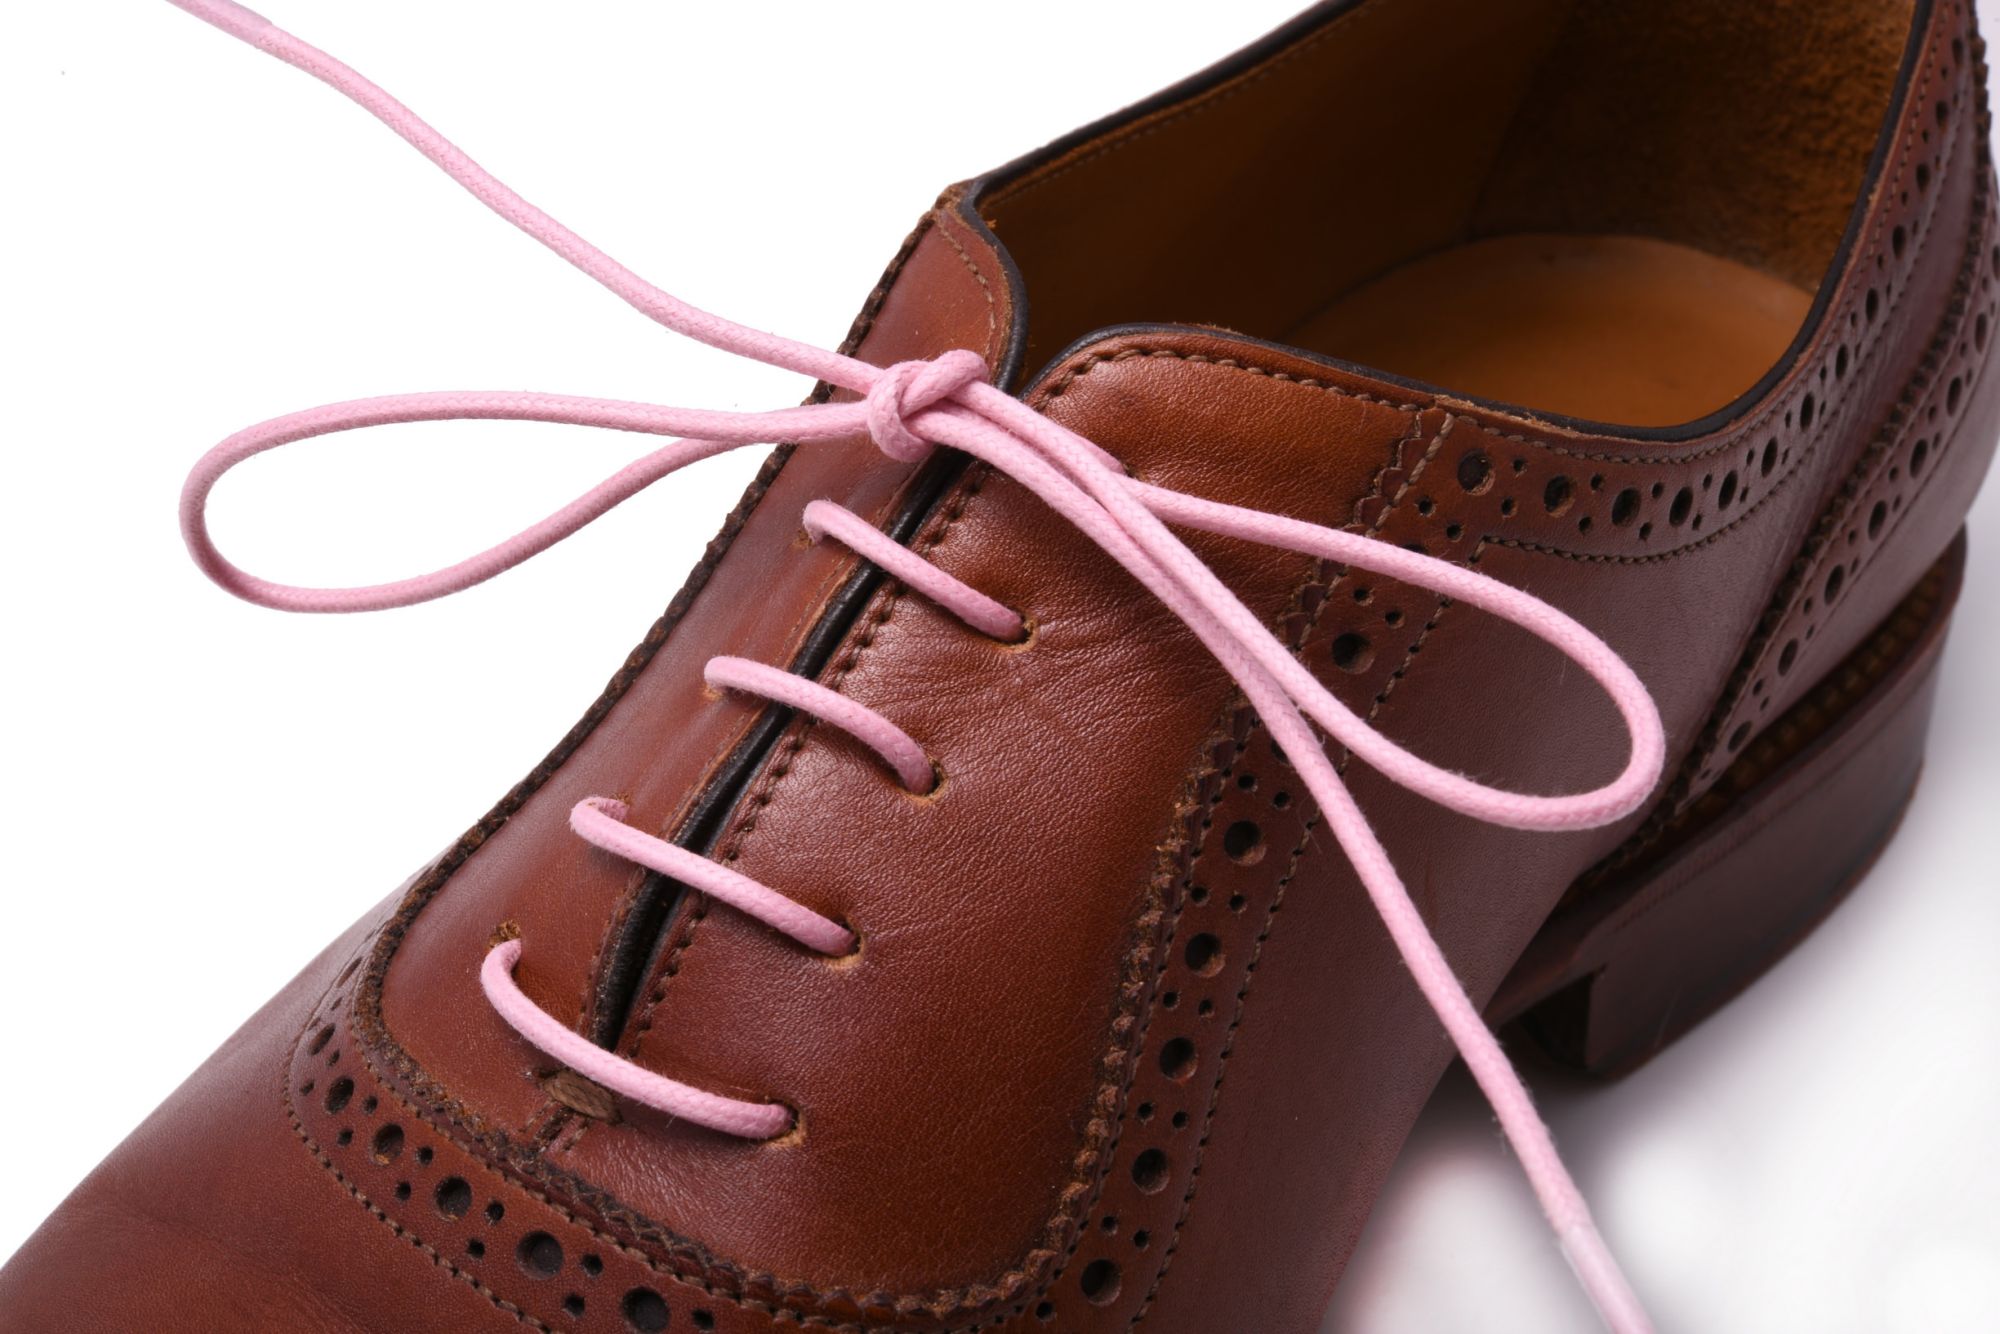 PFTWS Flat Shoe laces pink color Shoe Lace Price in India  Buy PFTWS Flat Shoe  laces pink color Shoe Lace online at Flipkartcom